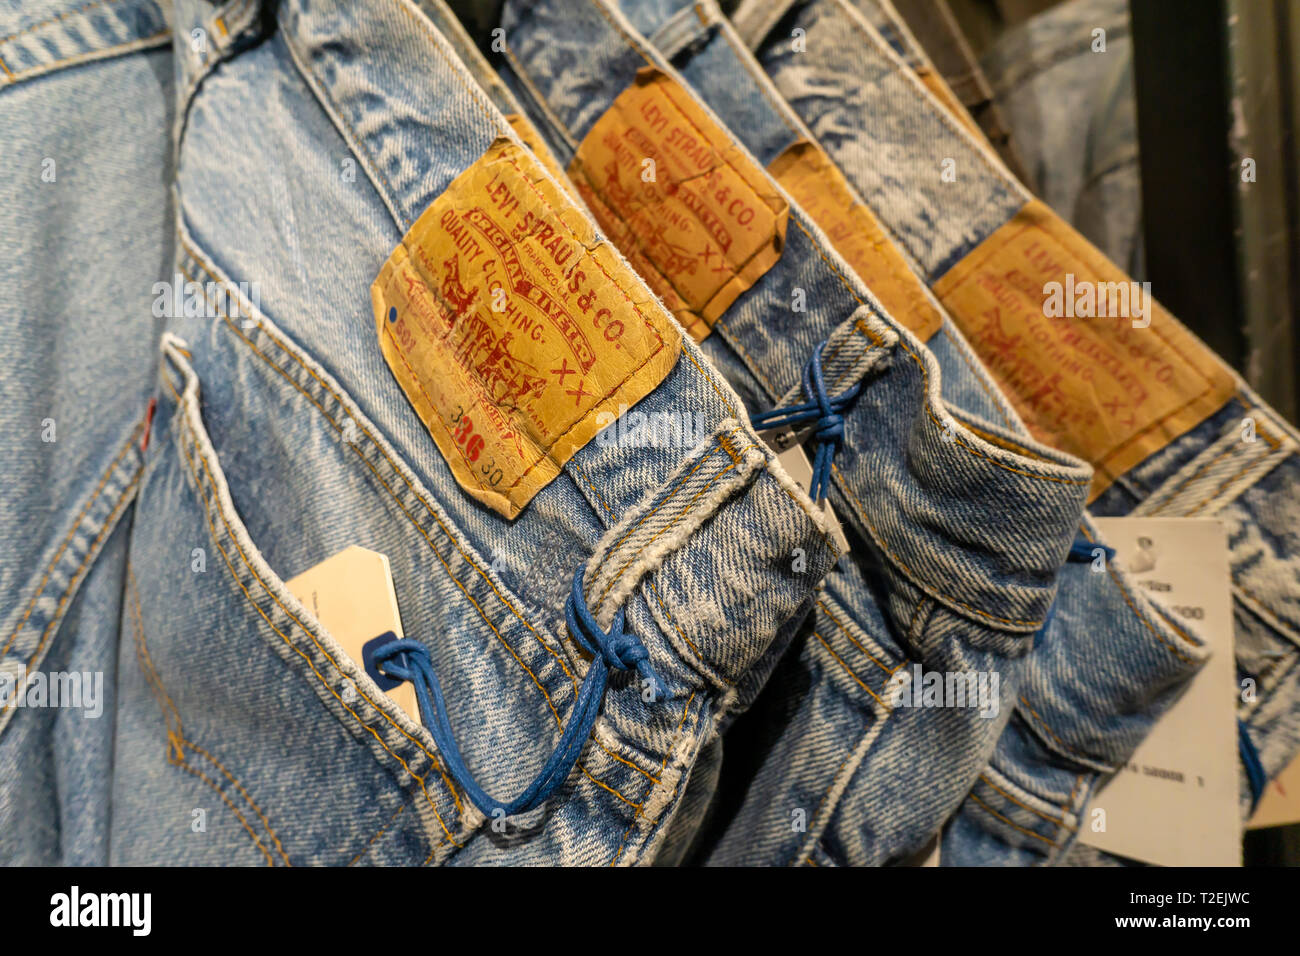 Vintage in jeans Levi Strauss & Co. flagship store in Times Square a New  York Martedì, Marzo 19, 2019 in anticipo della loro offerta pubblica  iniziale più tardi nel corso della settimana. (©